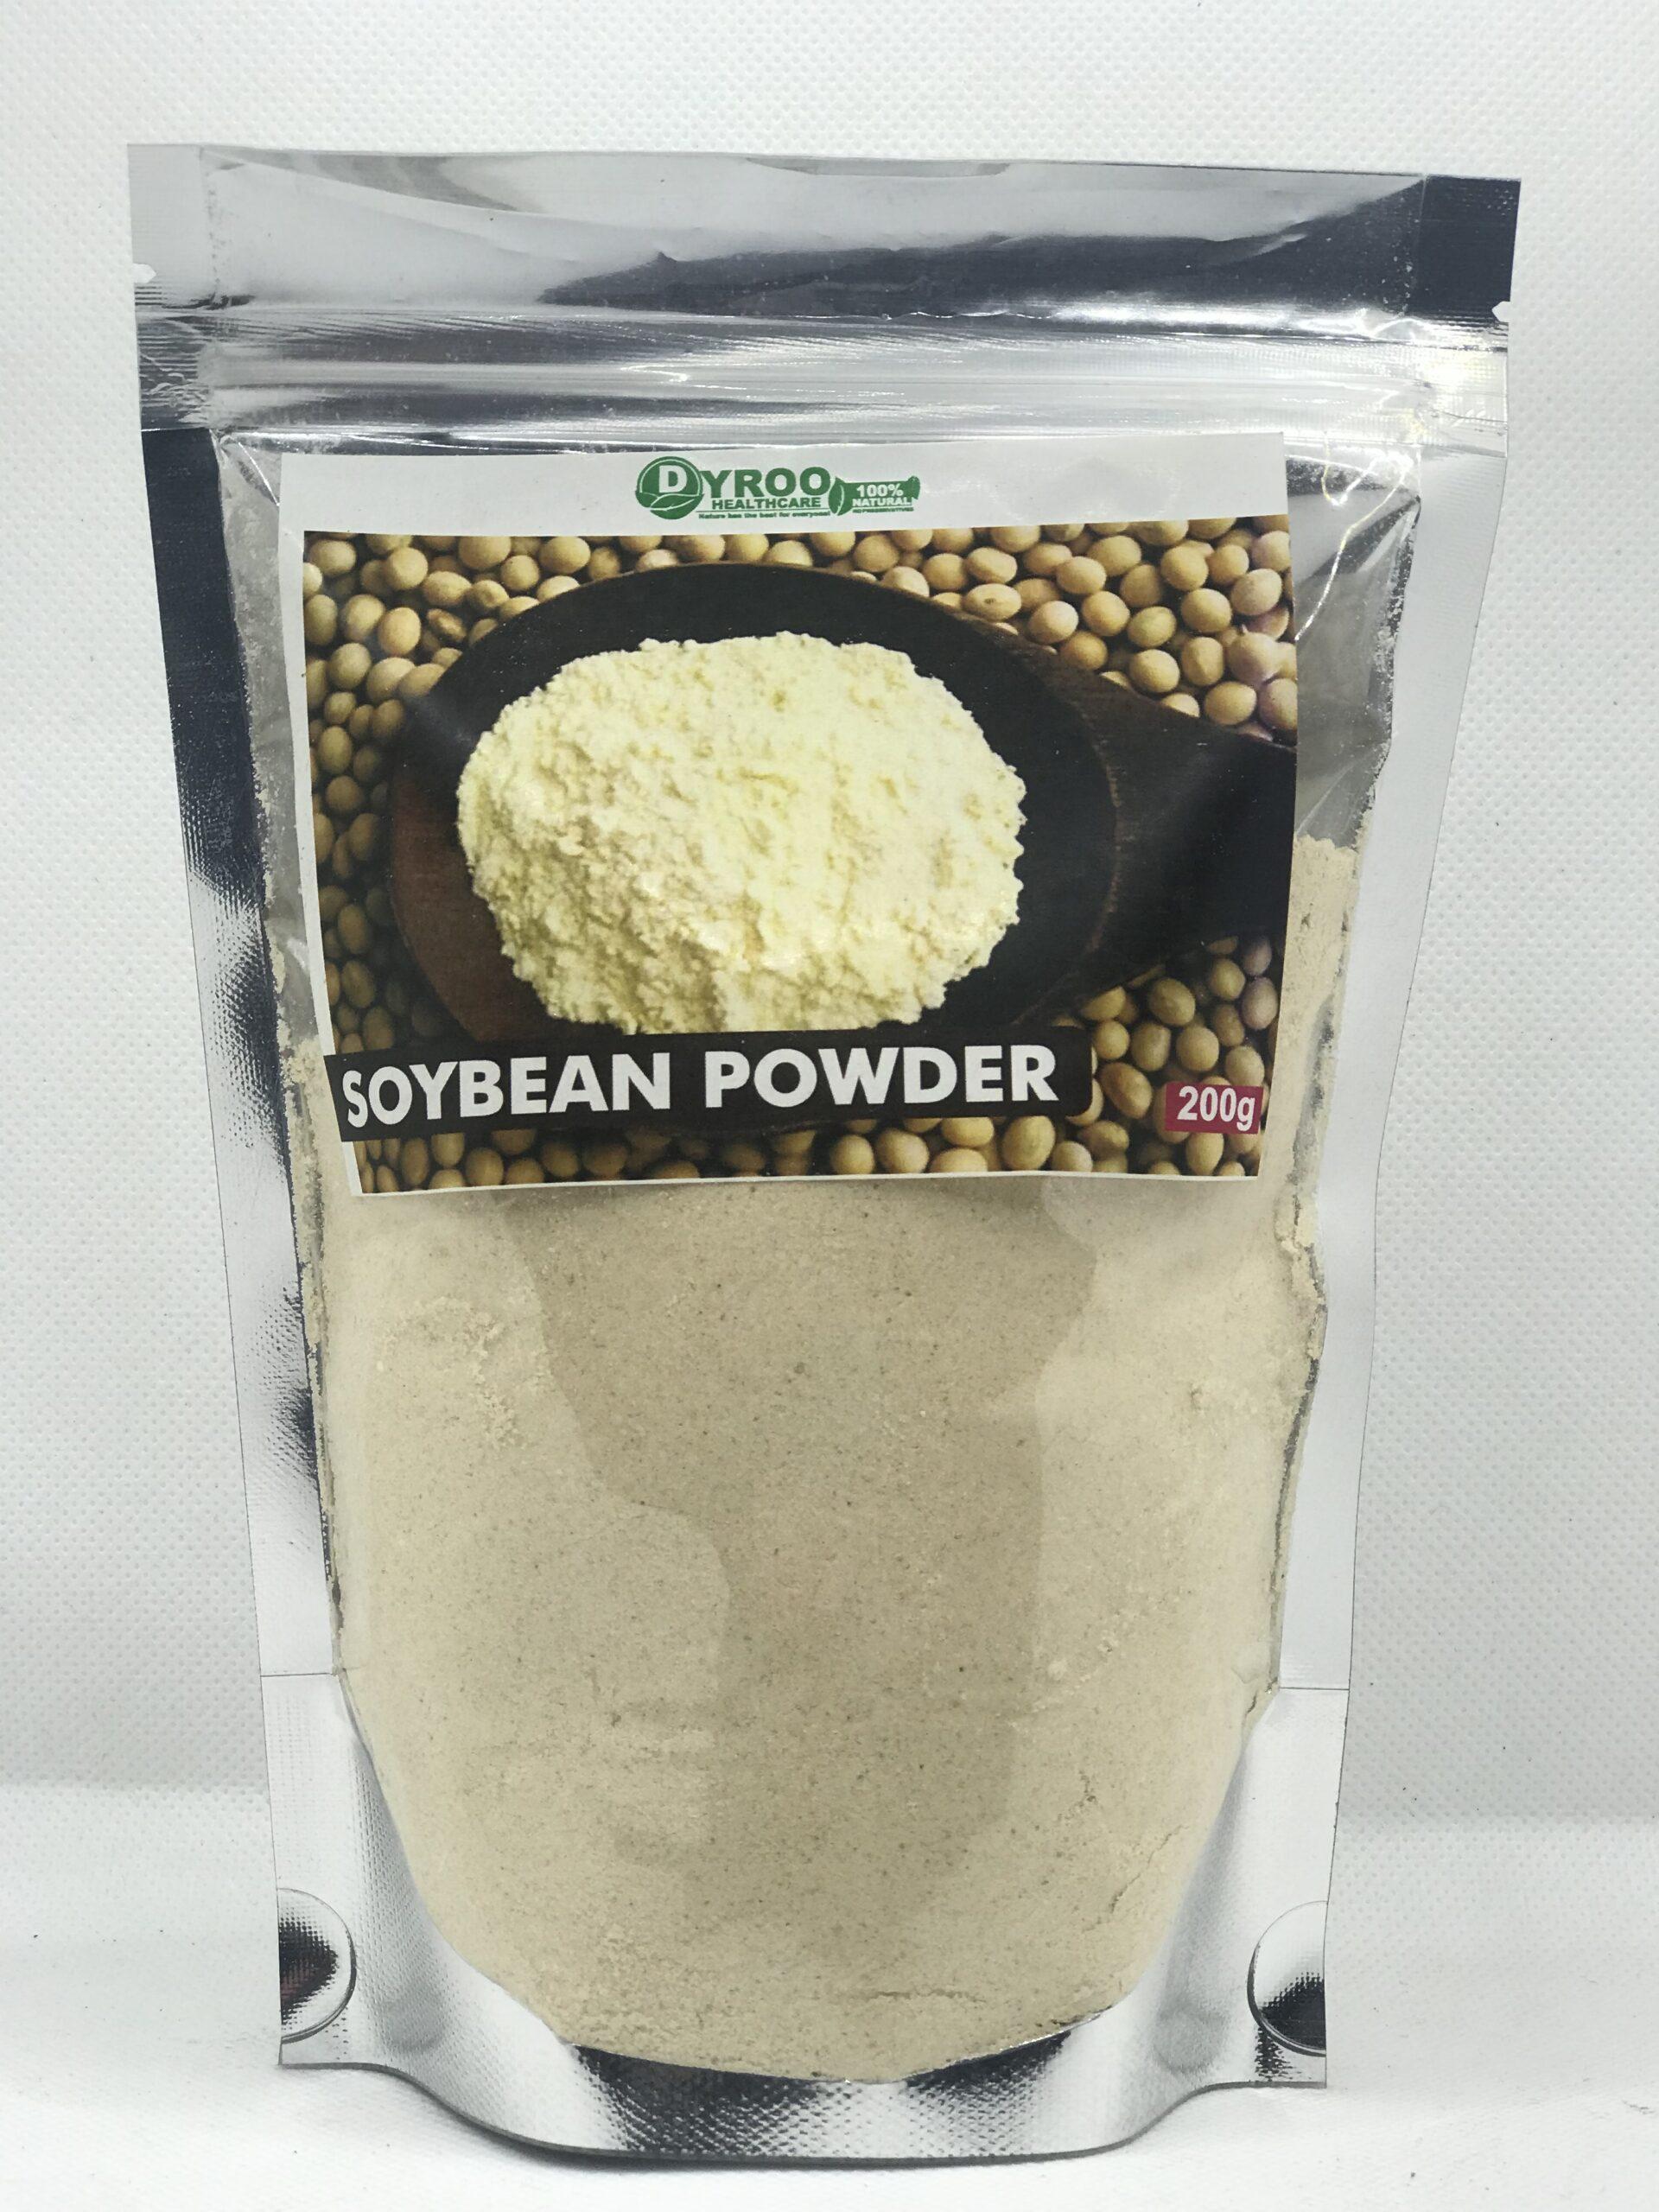 Dyroo Organic Soy Bean Powder